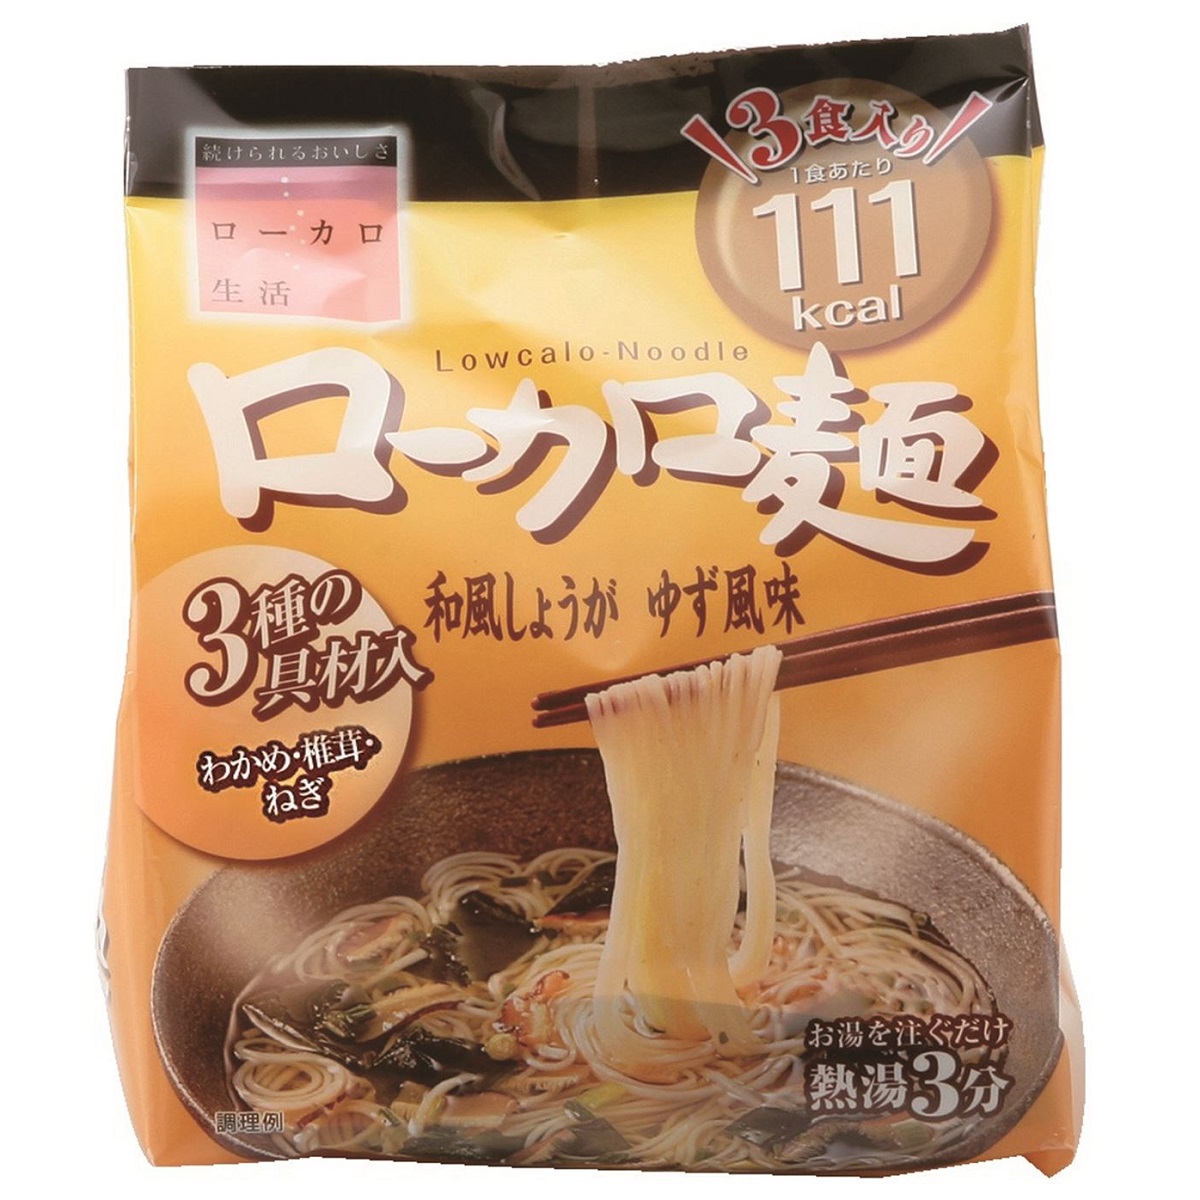 ローカロ麺5種30食セット